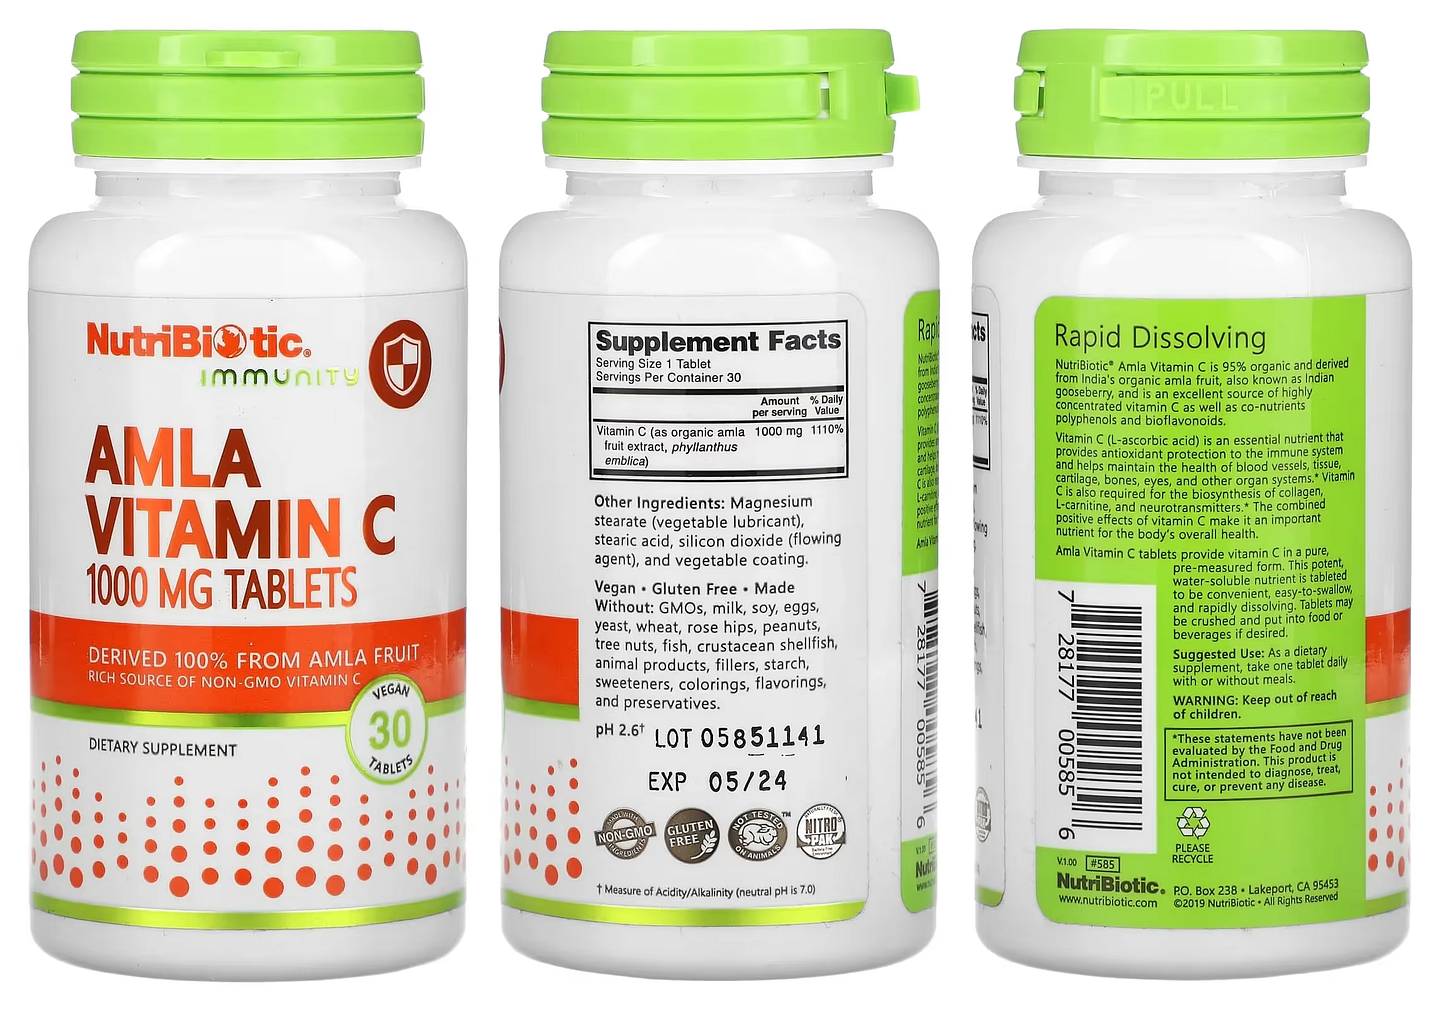 NutriBiotic, Immunity packaging